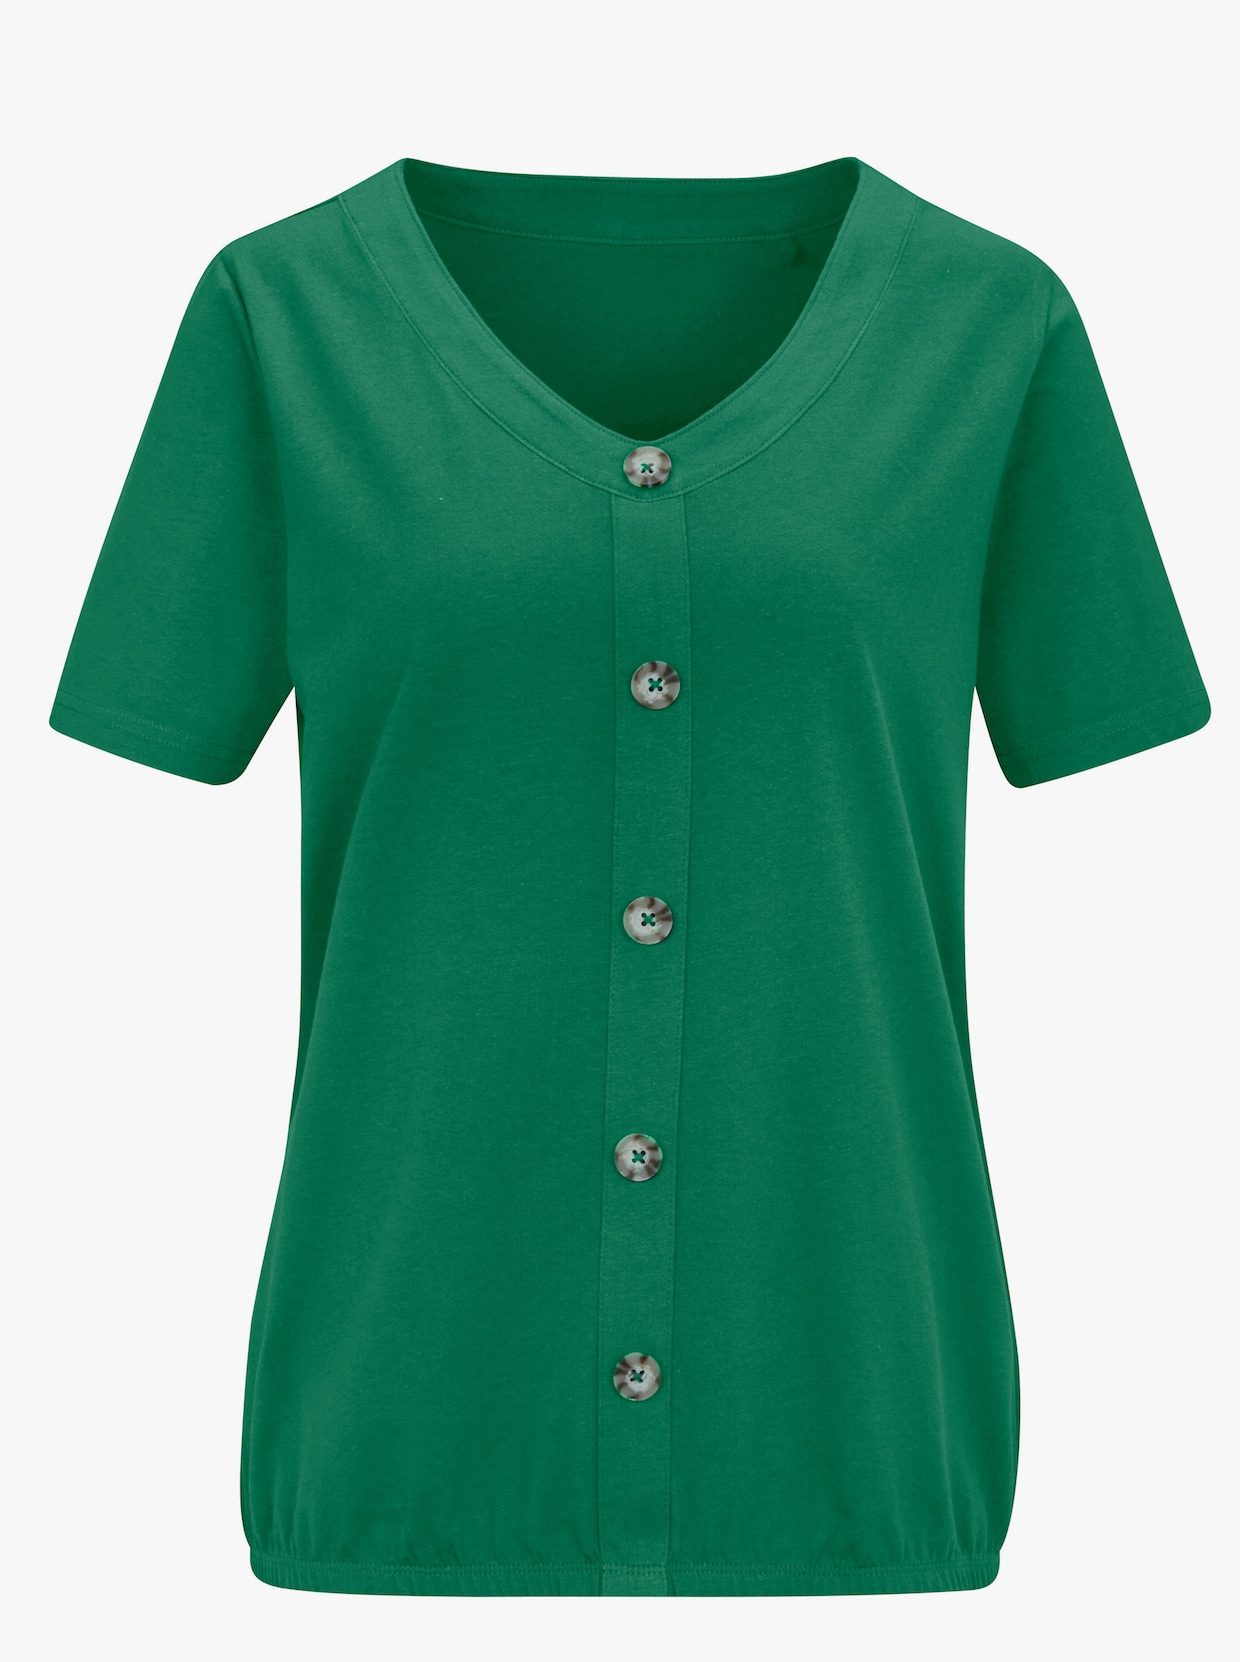 Tričko s krátkým rukávem - zelená